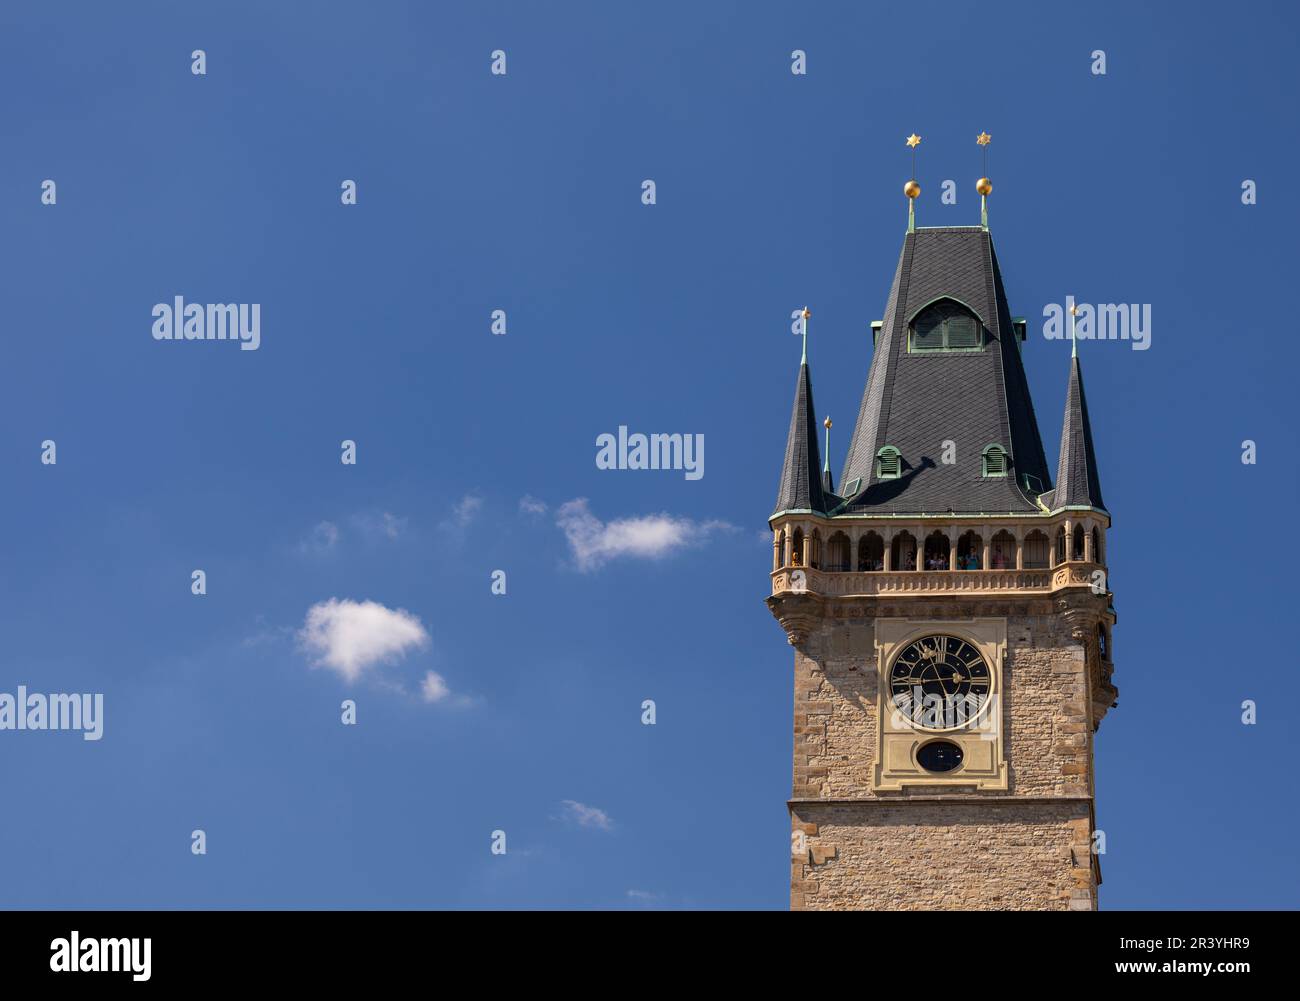 PLAZA DE LA CIUDAD VIEJA, PRAGA, REPÚBLICA CHECA, EUROPA -Top de la Torre del Reloj en la Plaza de la Ciudad Vieja, centro de Praga. Foto de stock